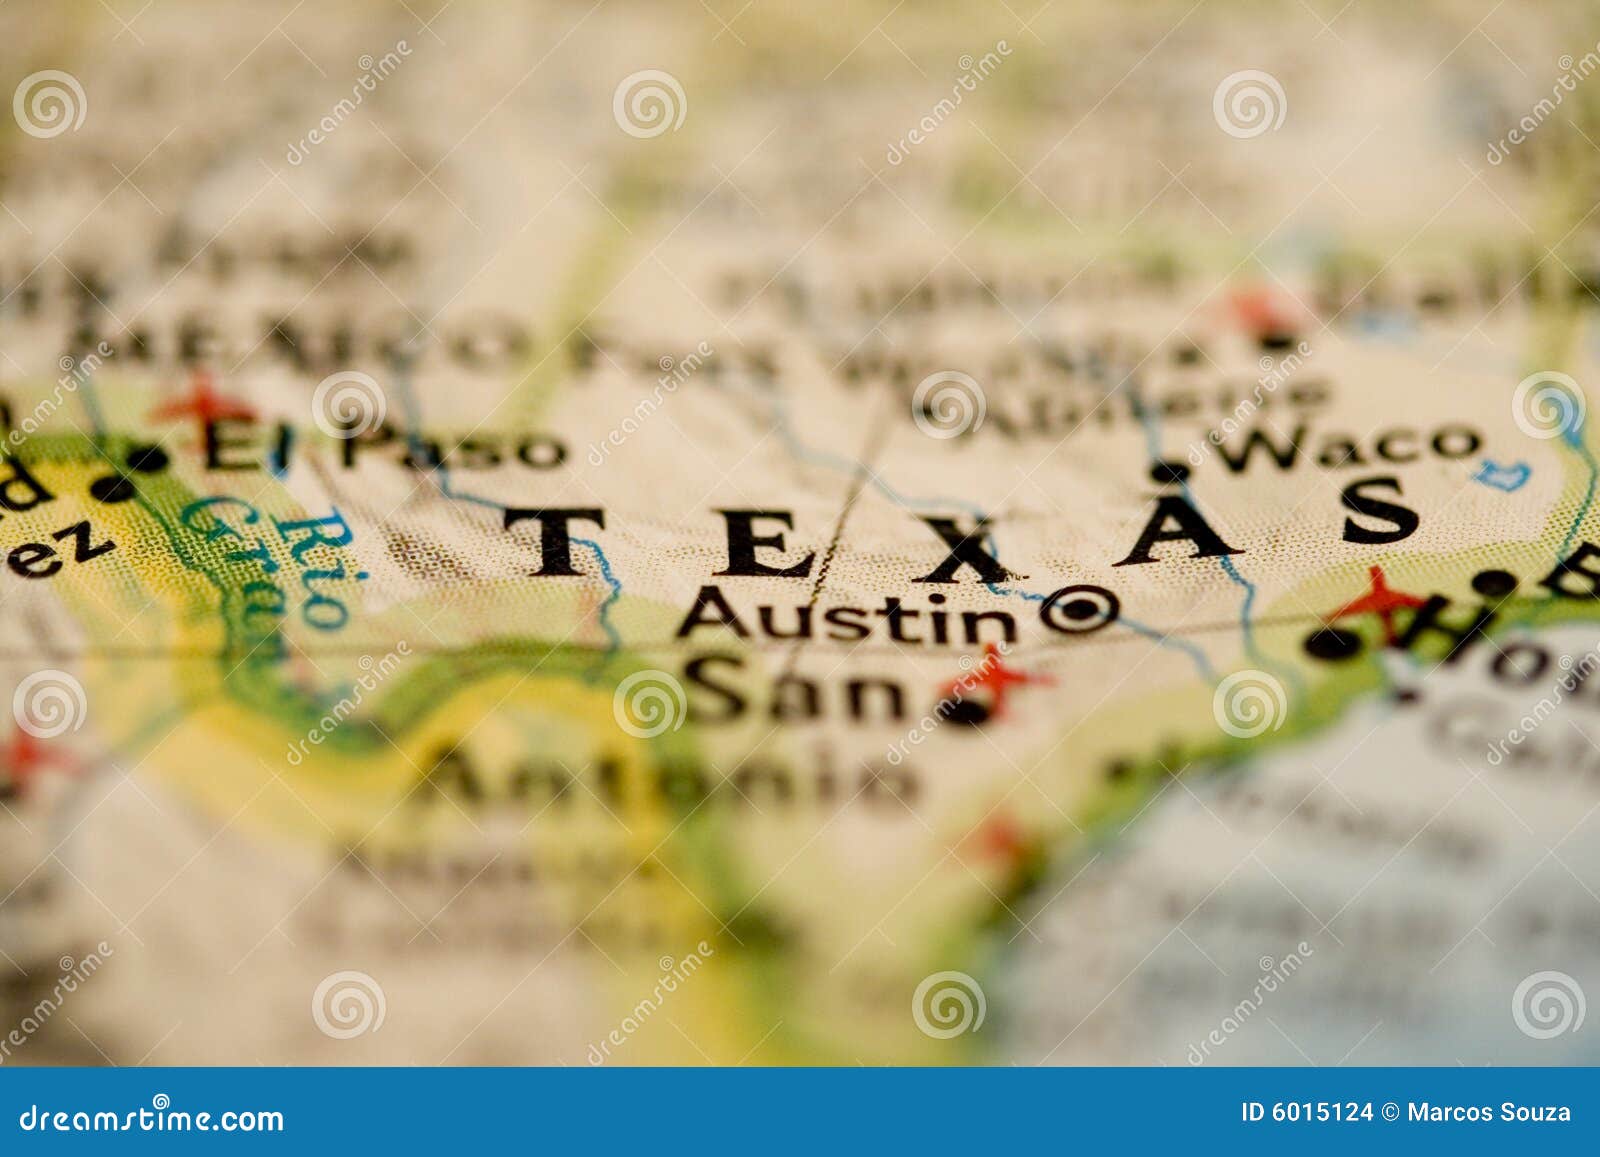 texas map